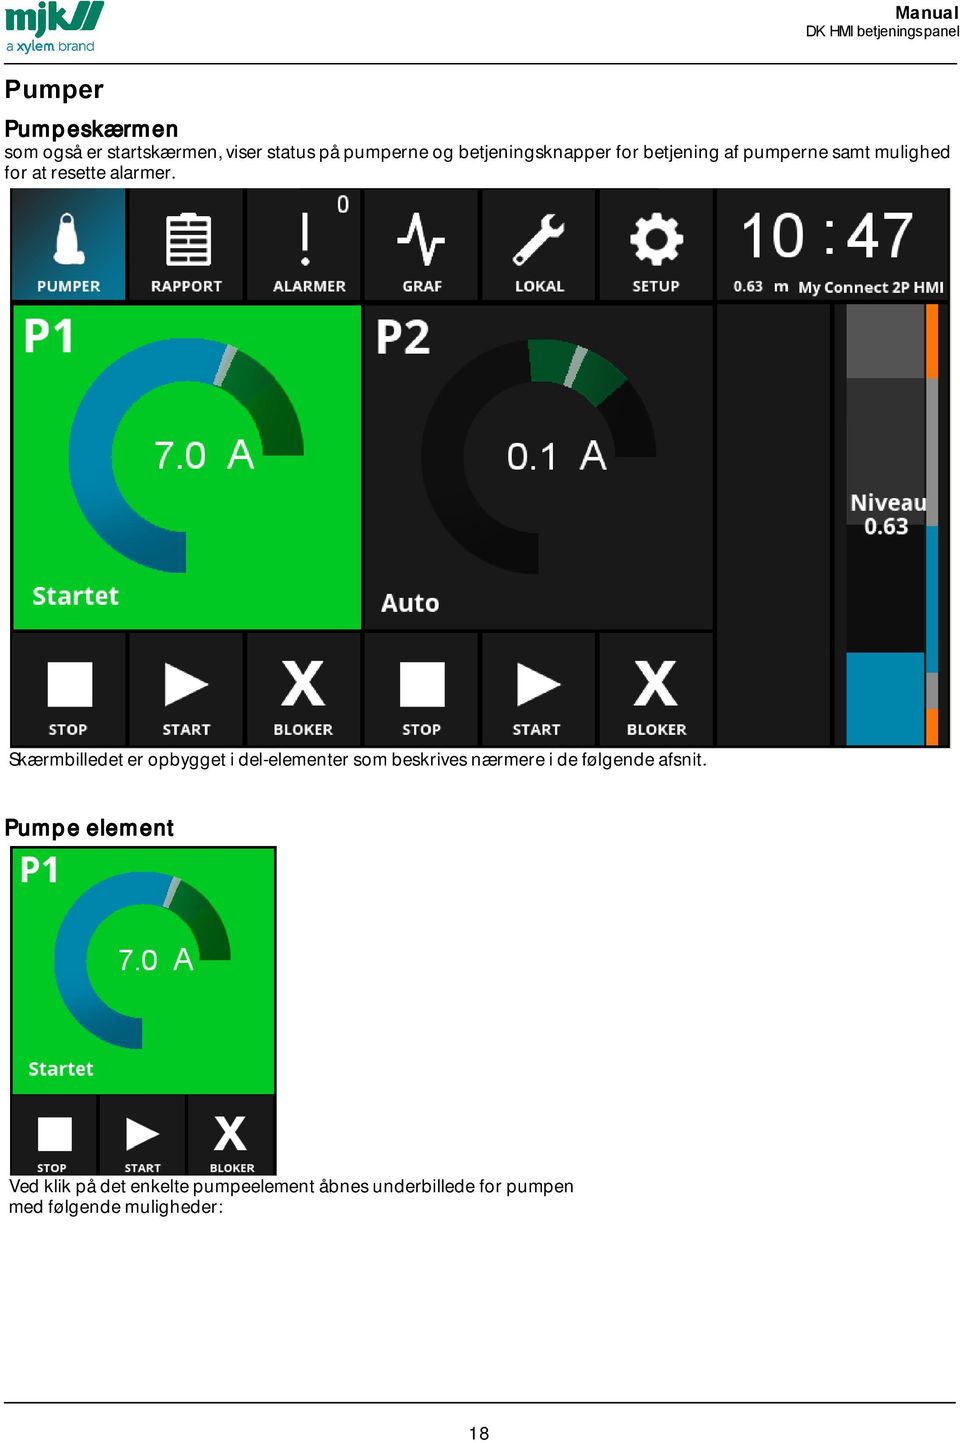 Skærmbilledet er opbygget i del-elementer som beskrives nærmere i de følgende afsnit.